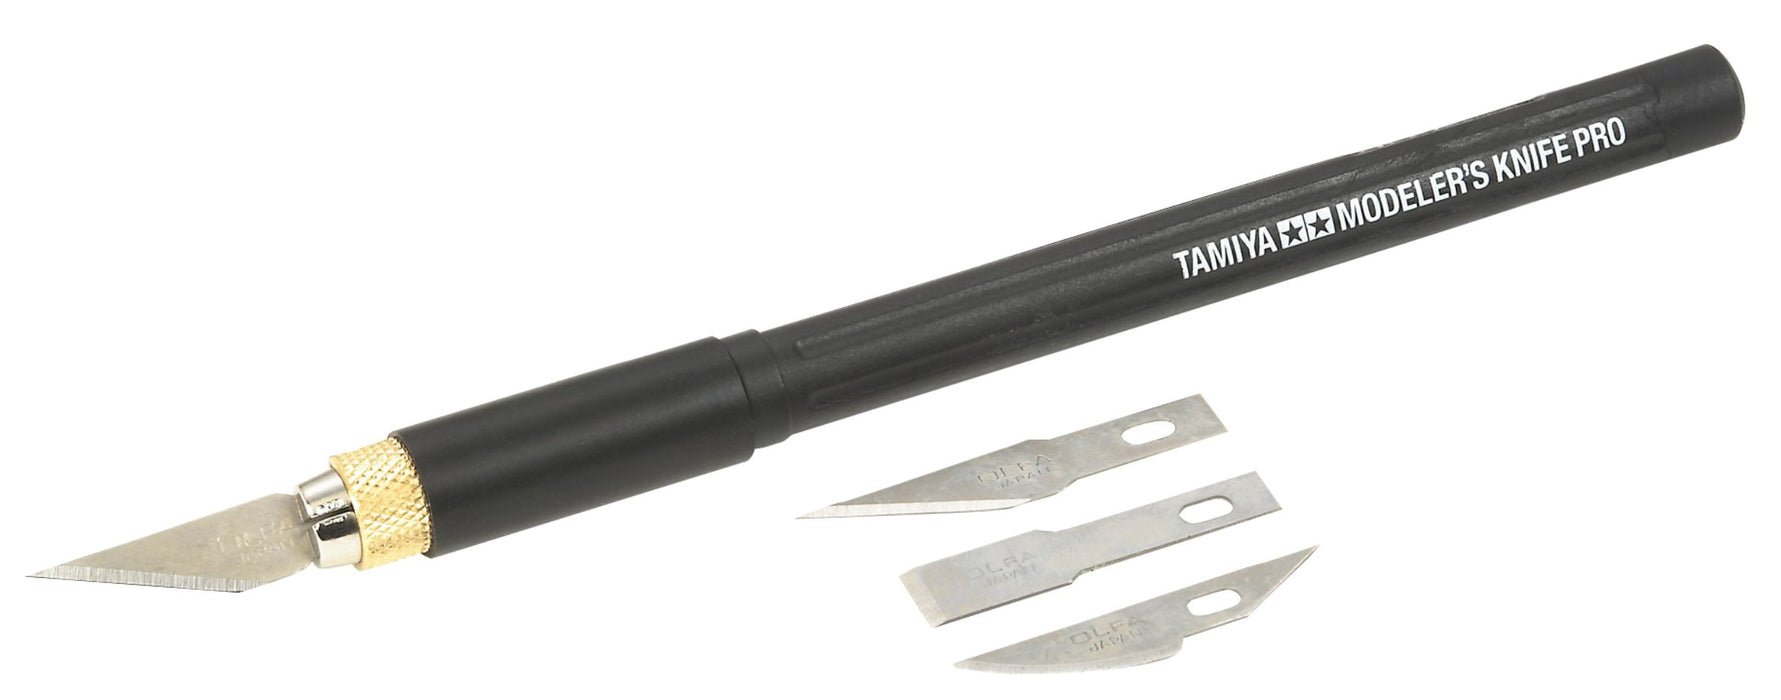 Tamiya 74098 Modeler's Knife Pro Plastikmodellbau-Werkzeug